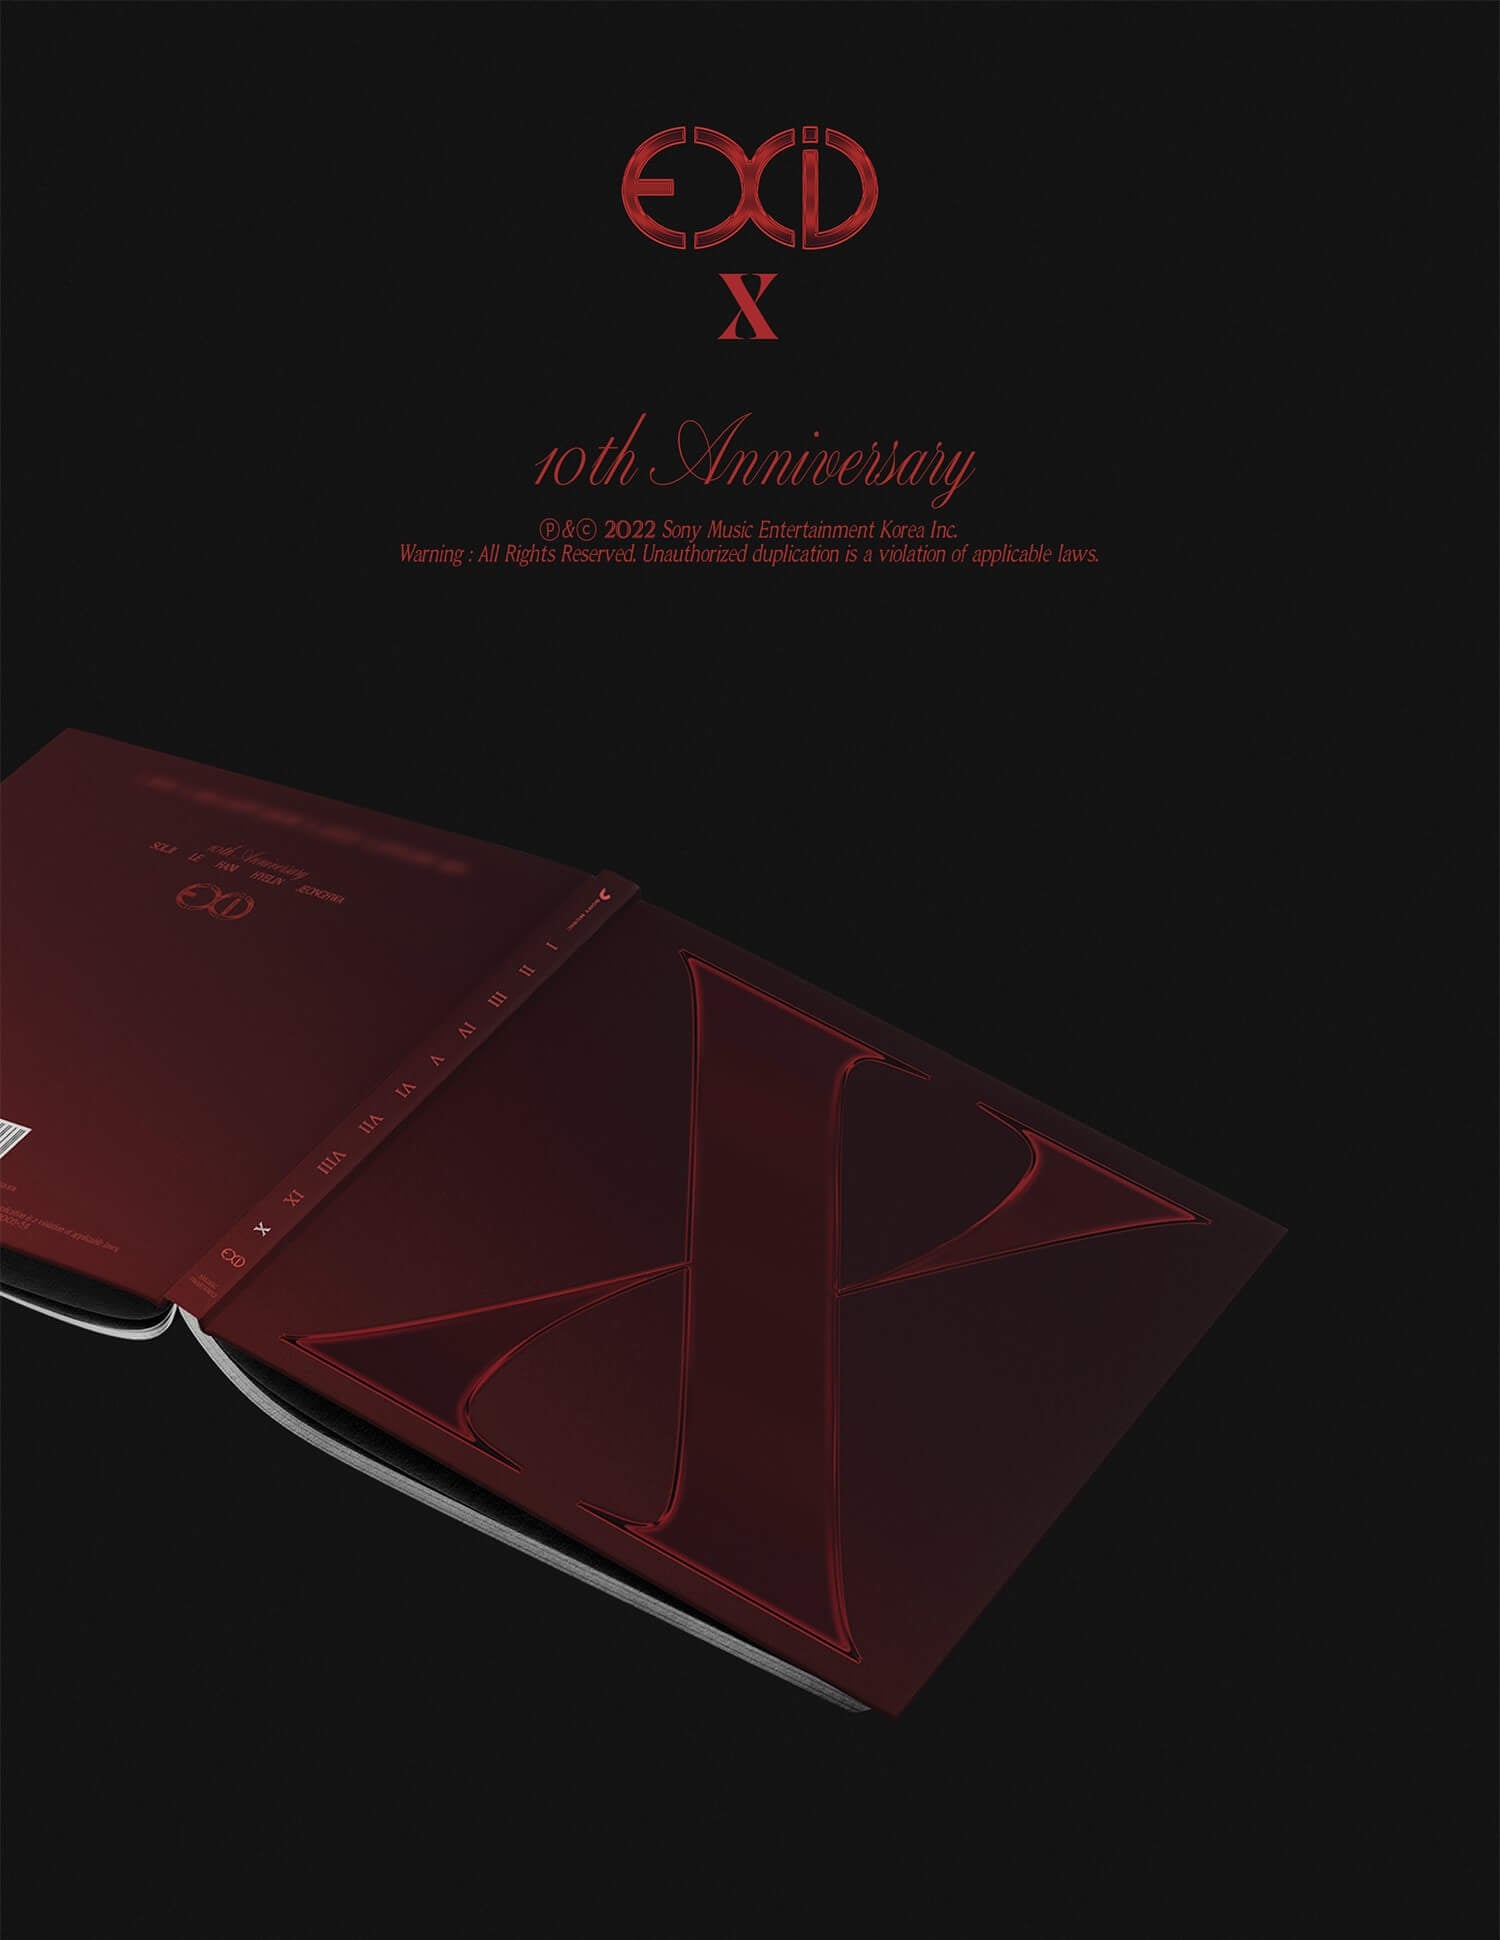 EXID 10th Anniversary Single Album X